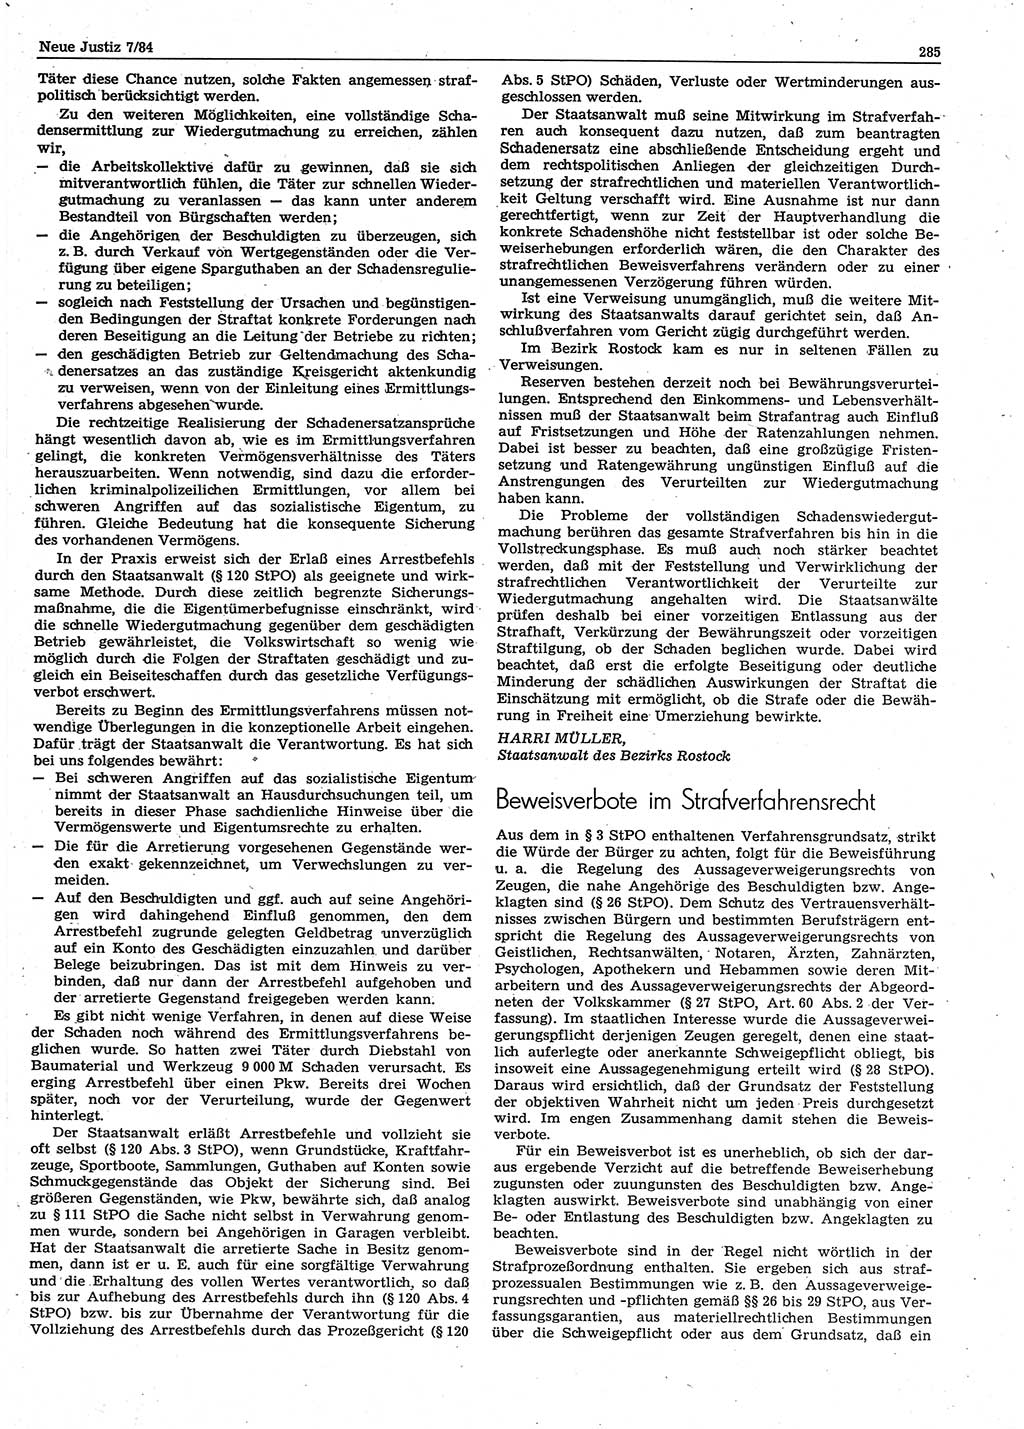 Neue Justiz (NJ), Zeitschrift für sozialistisches Recht und Gesetzlichkeit [Deutsche Demokratische Republik (DDR)], 38. Jahrgang 1984, Seite 285 (NJ DDR 1984, S. 285)